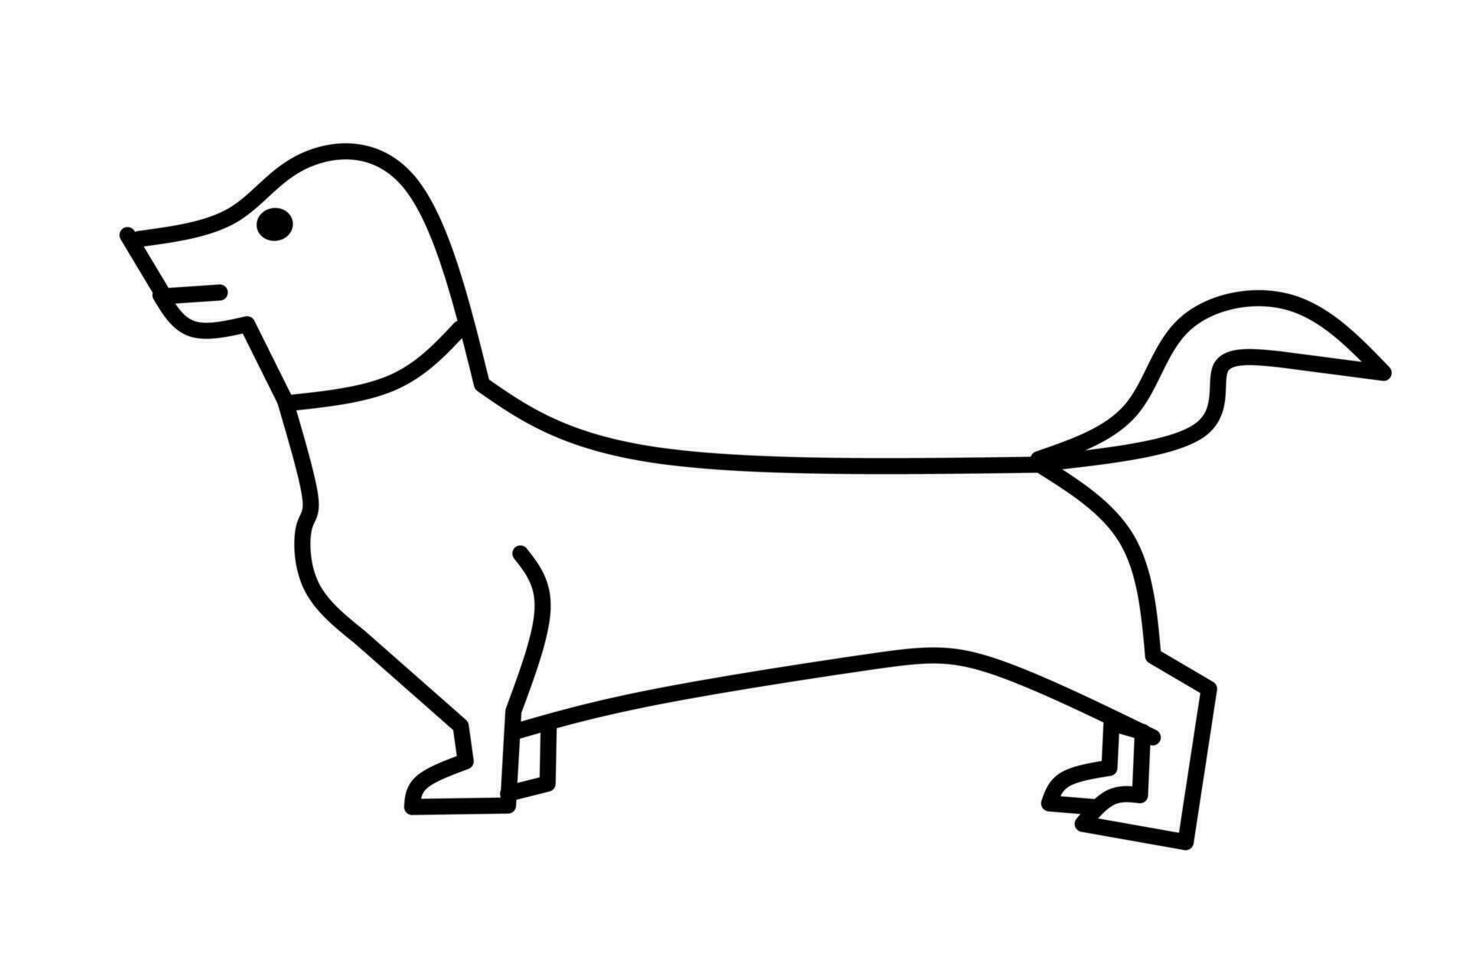 chien ligne dessin isolé sur blanc Contexte. vecteur illustration.